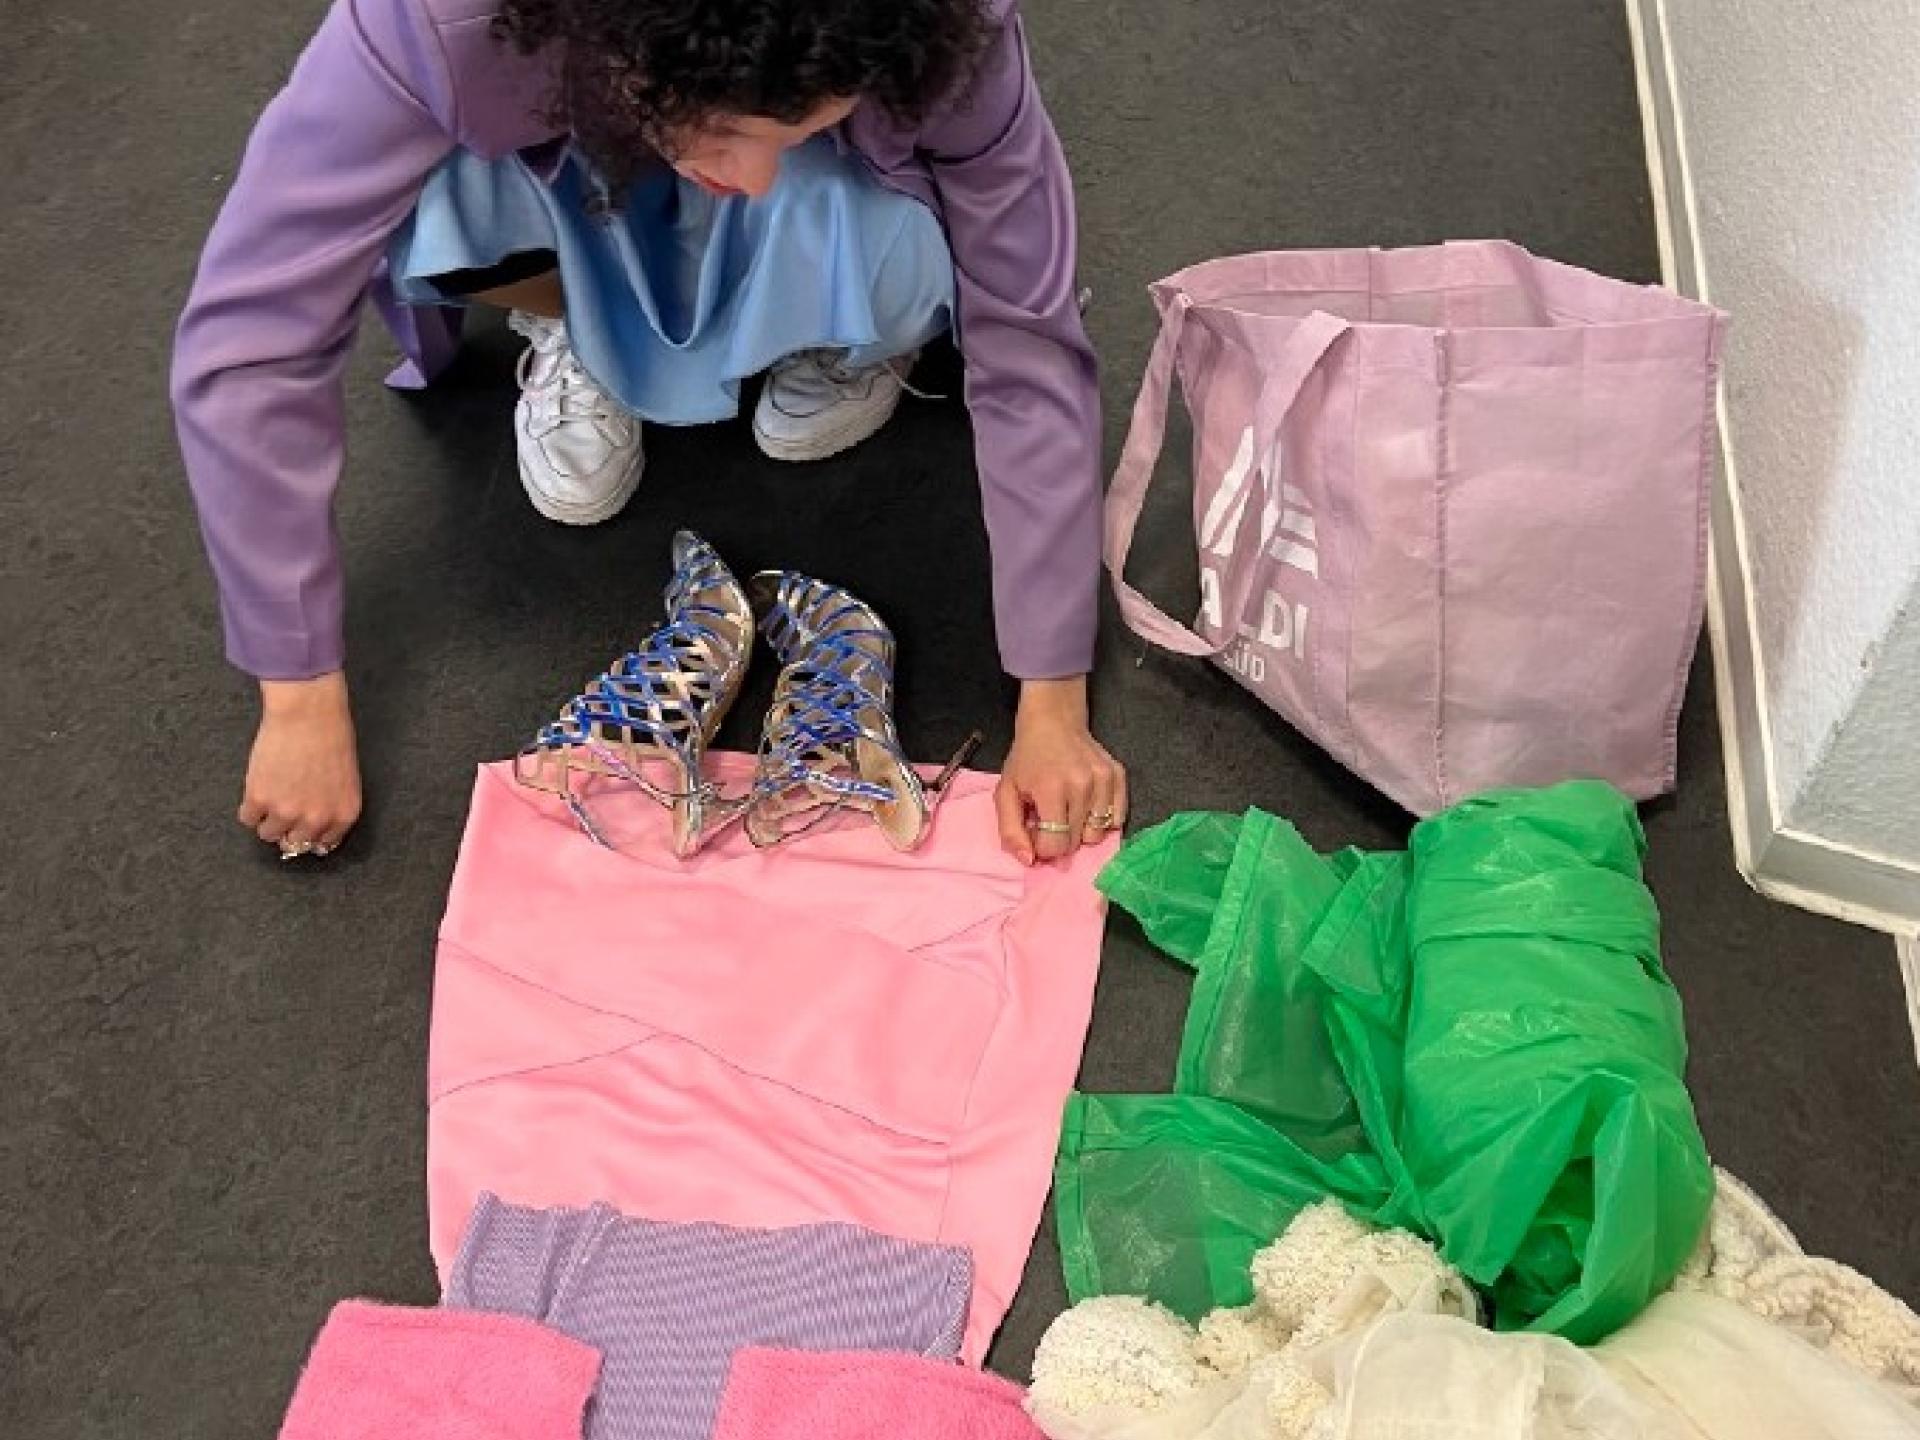 Eine Frau kniet vor und betrachtet auf dem Boden liegende Kleidungsstücke und Stoffe: eine rose Jacke, ein rosa Rock, grüne und weisse Stoffe.